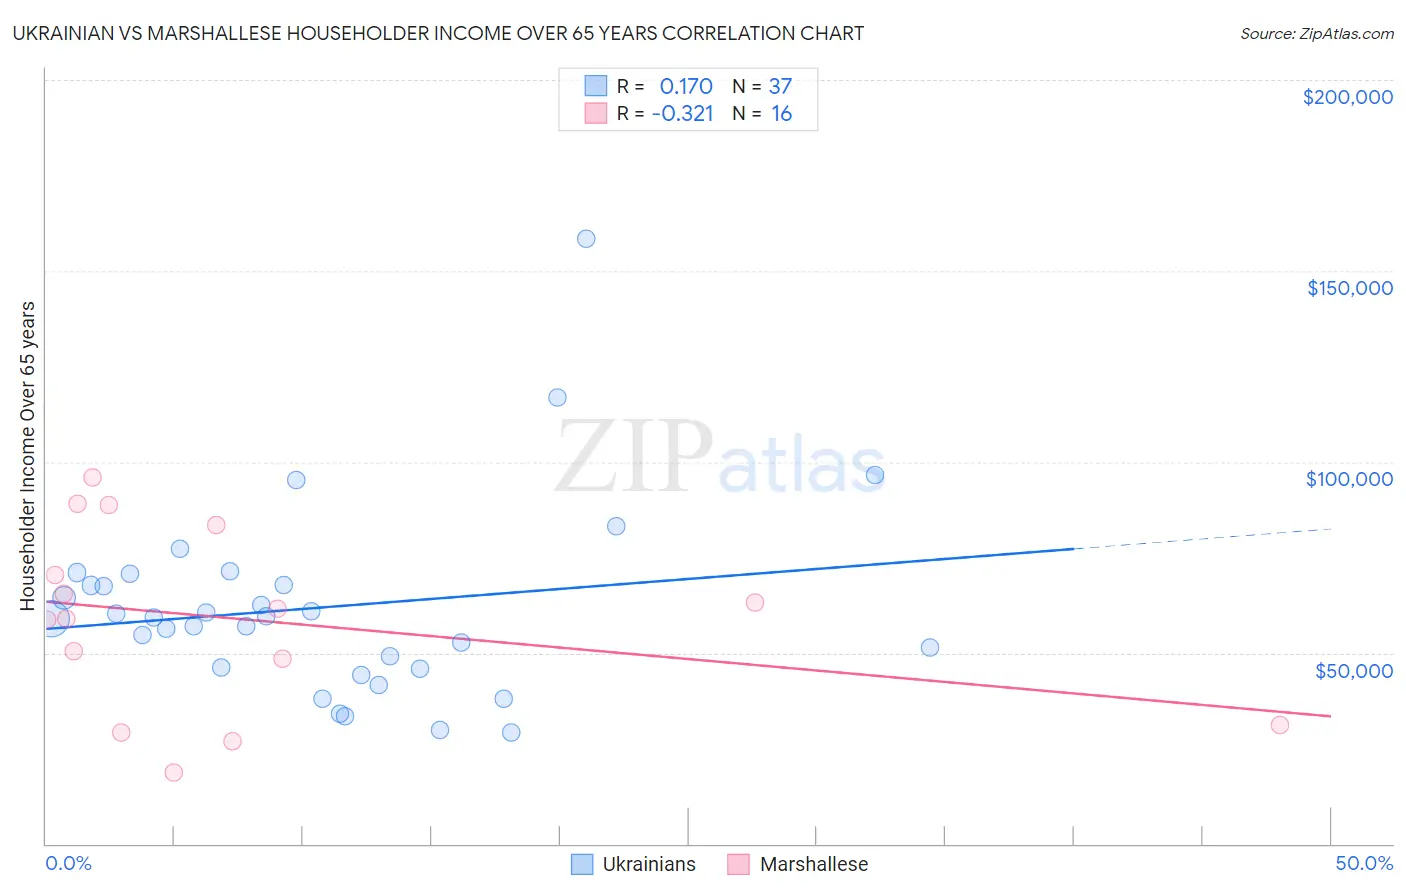 Ukrainian vs Marshallese Householder Income Over 65 years